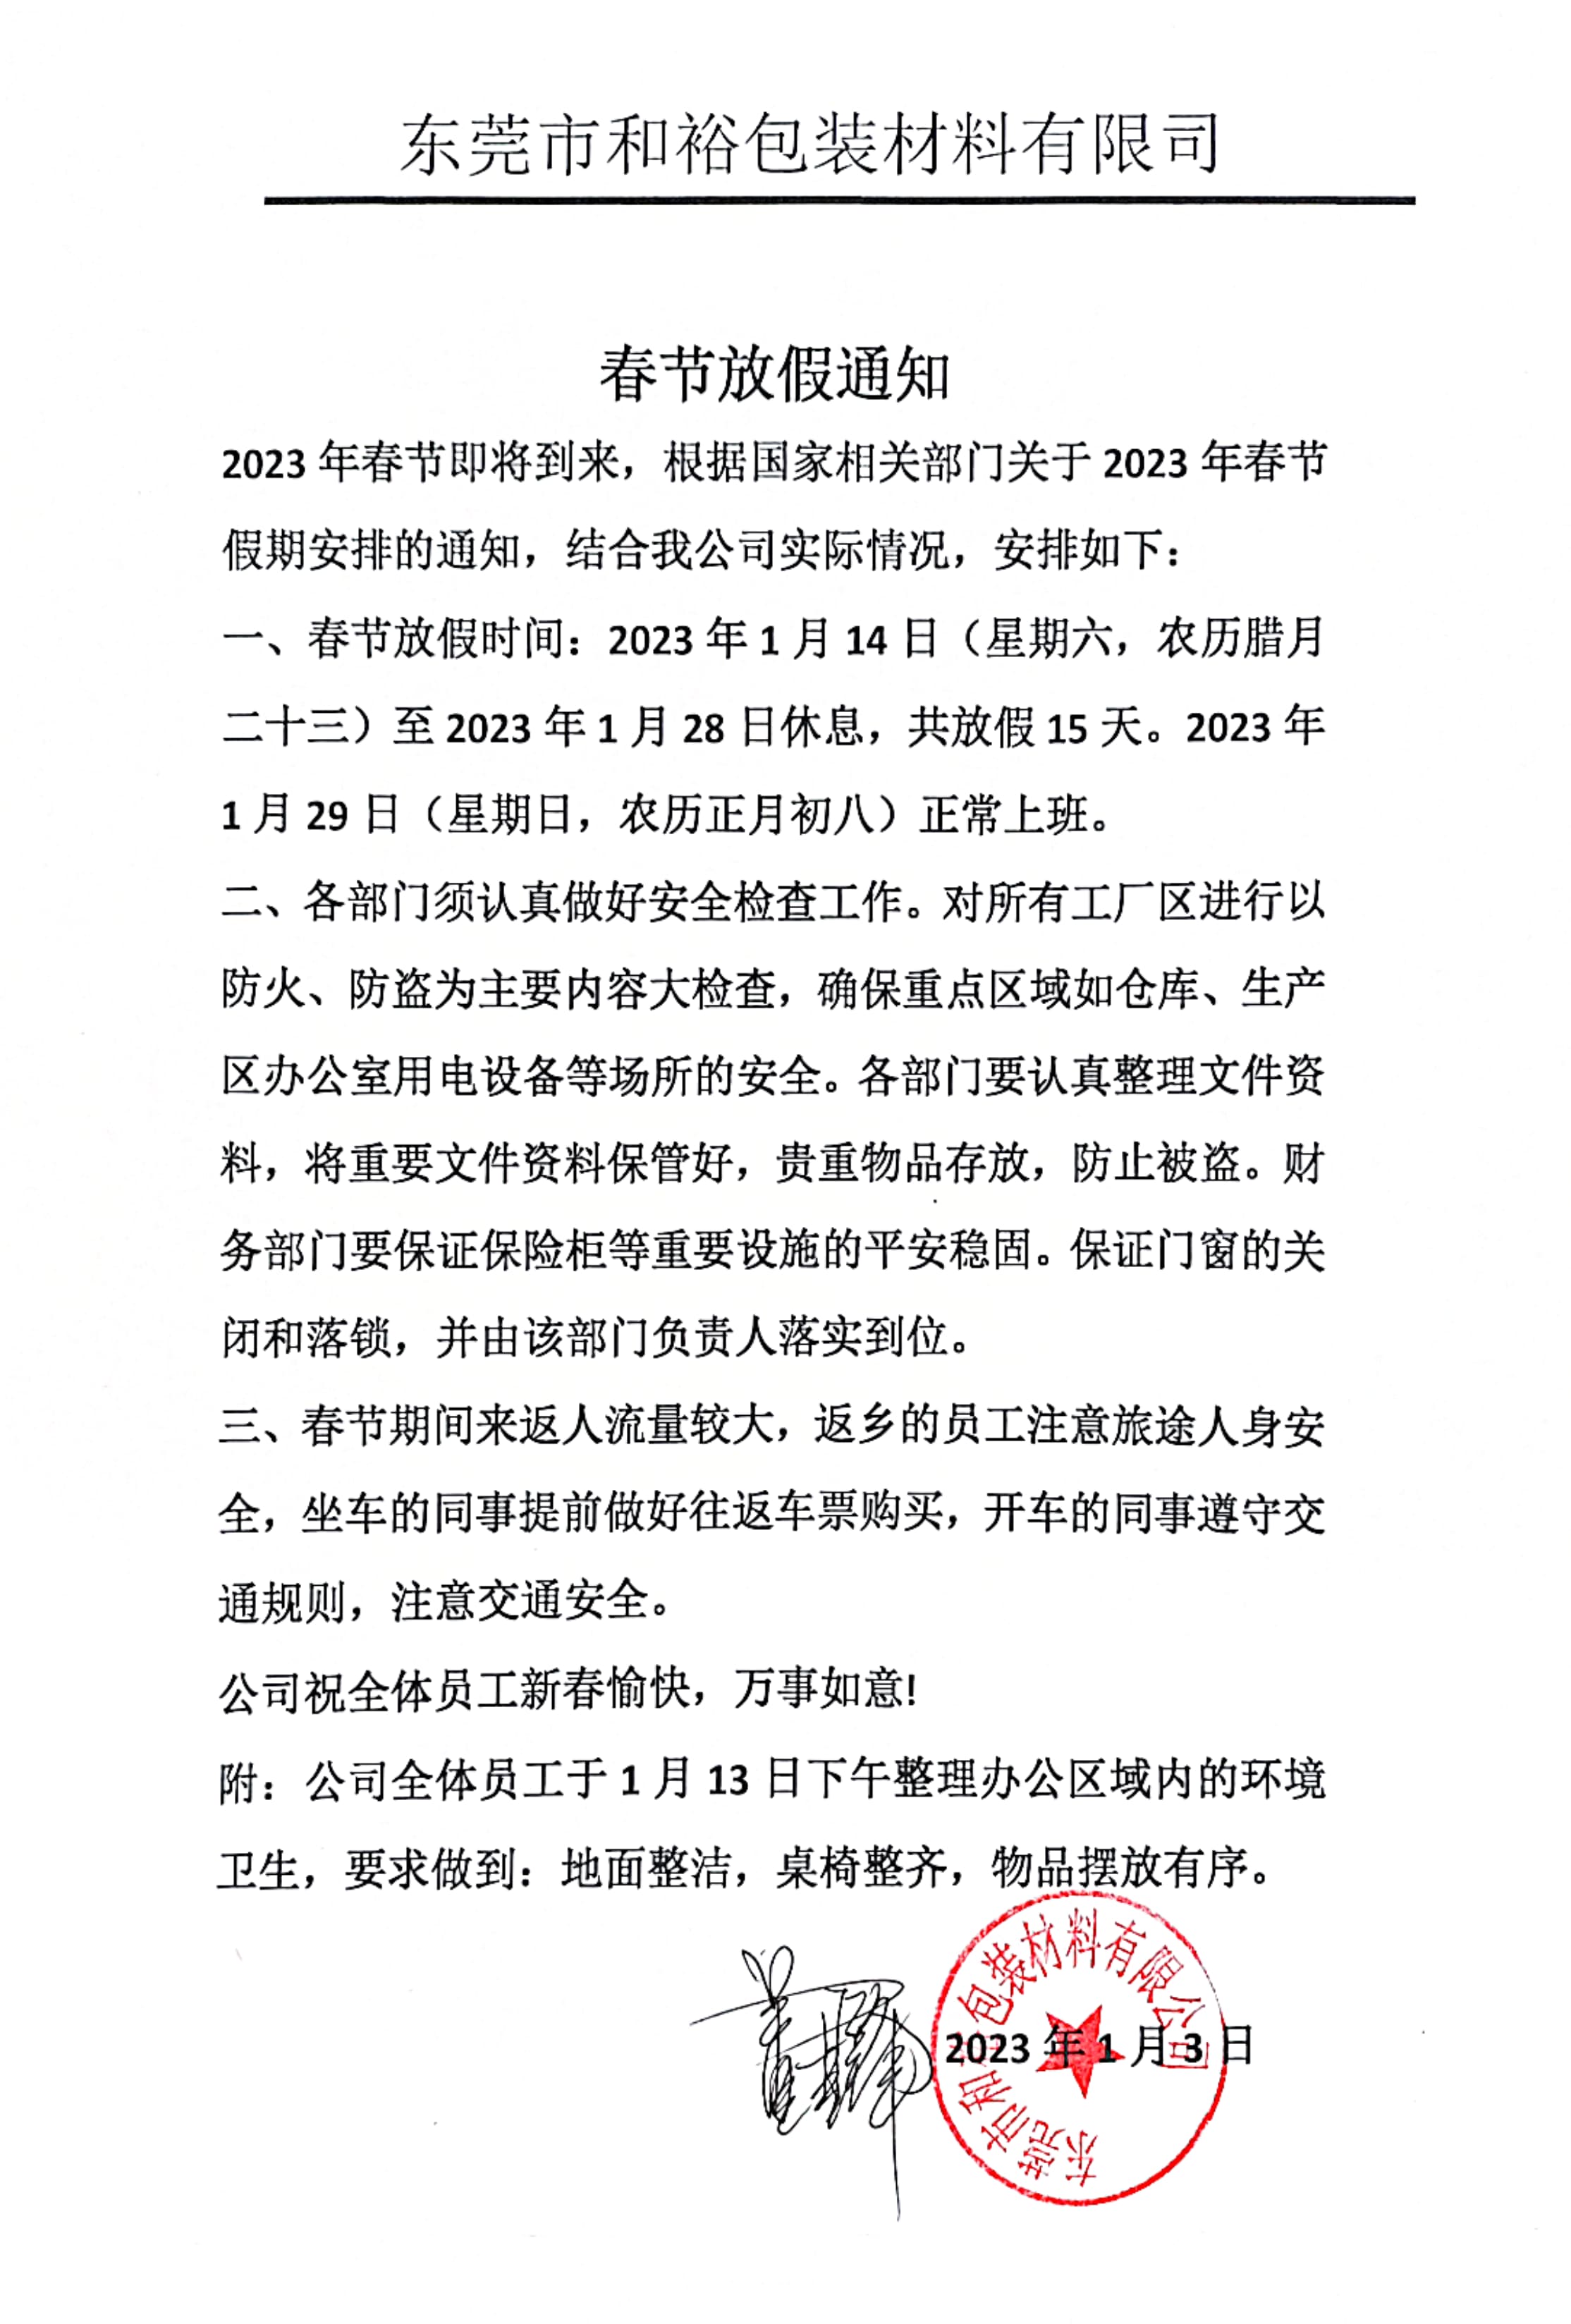 淄博市2023年和裕包装春节放假通知